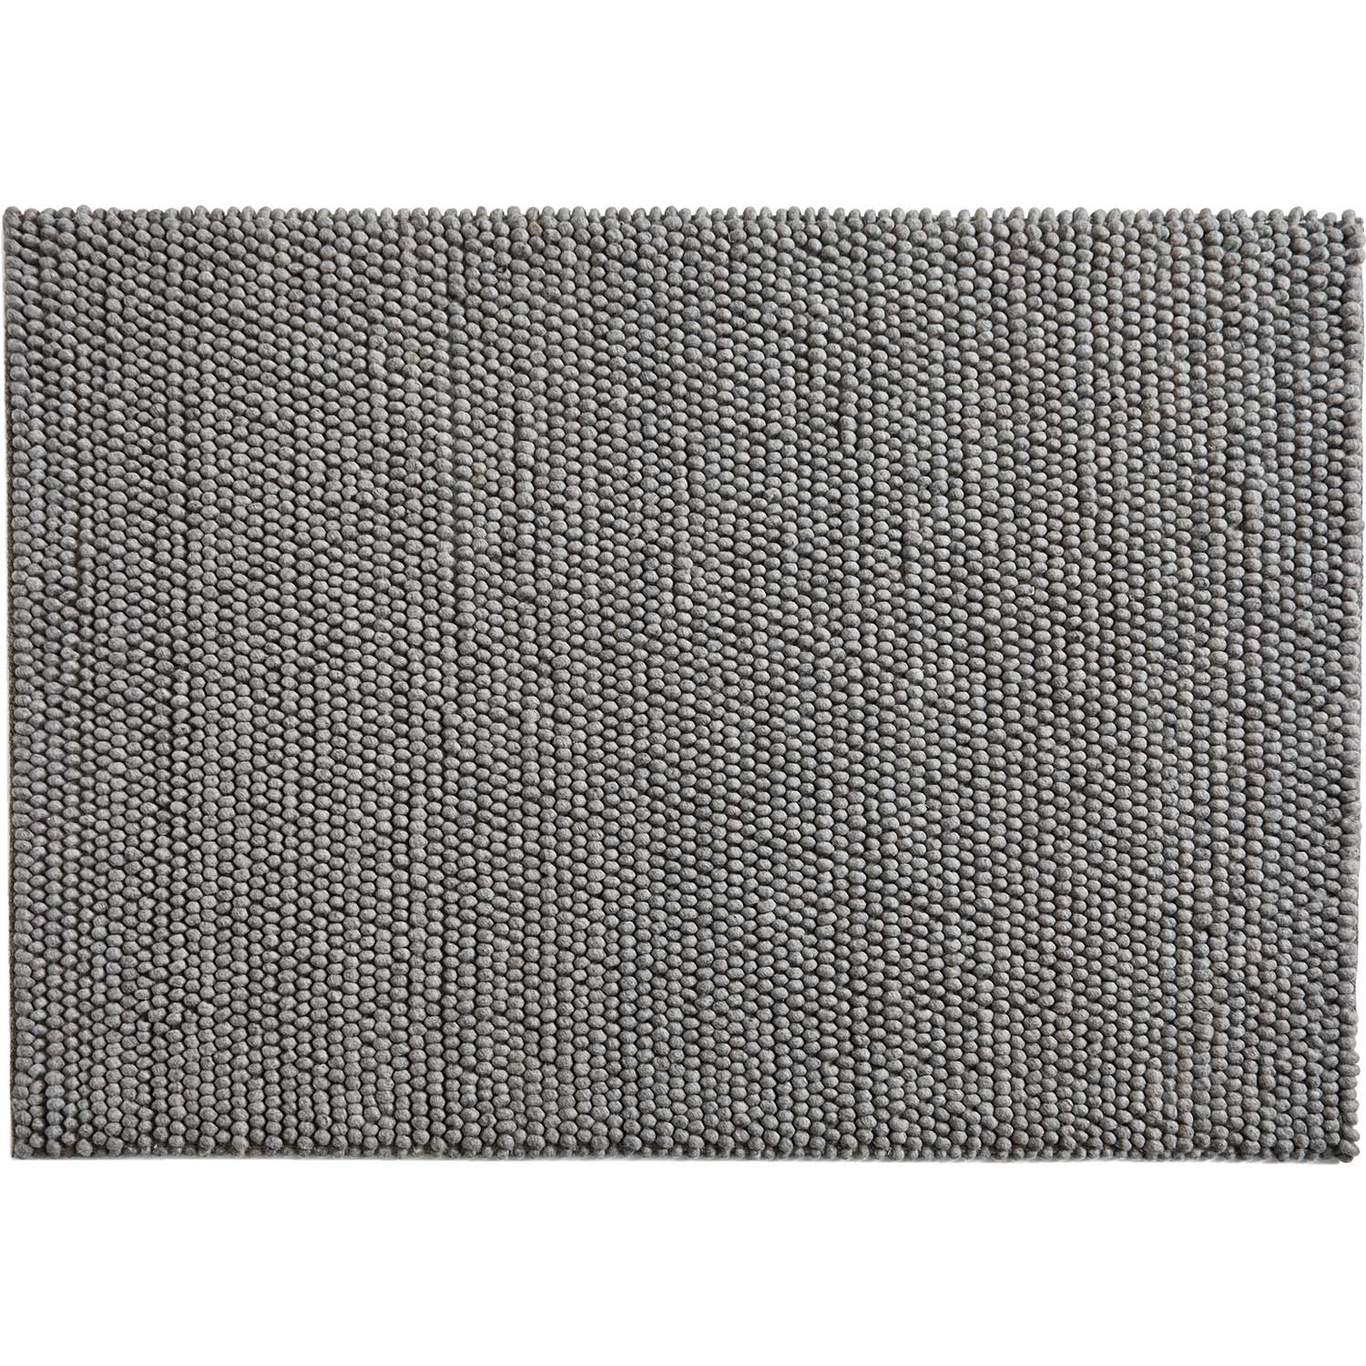 Peas Teppich, 140x200 cm / Medium Grey